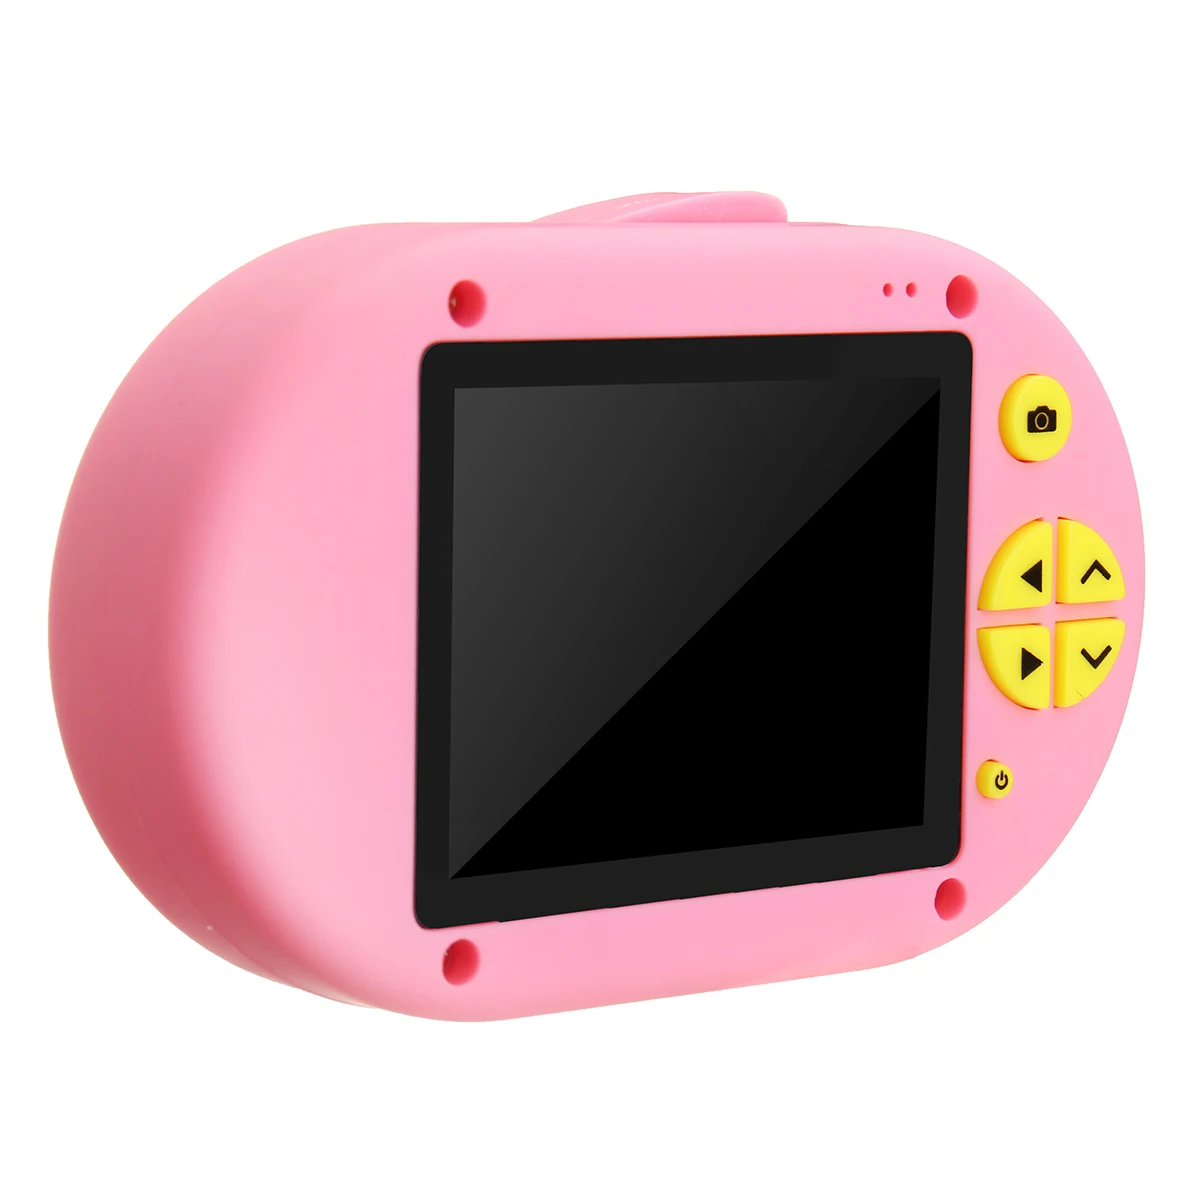 2 дюйма 1080P Мини цифровой Камера с изображением мультипликационных персонажей для детей фото Камера Wi-Fi USB фон для фотосъемки на день рождения подарок для ребенка детские игрушки для малышей - Цвет: Розовый